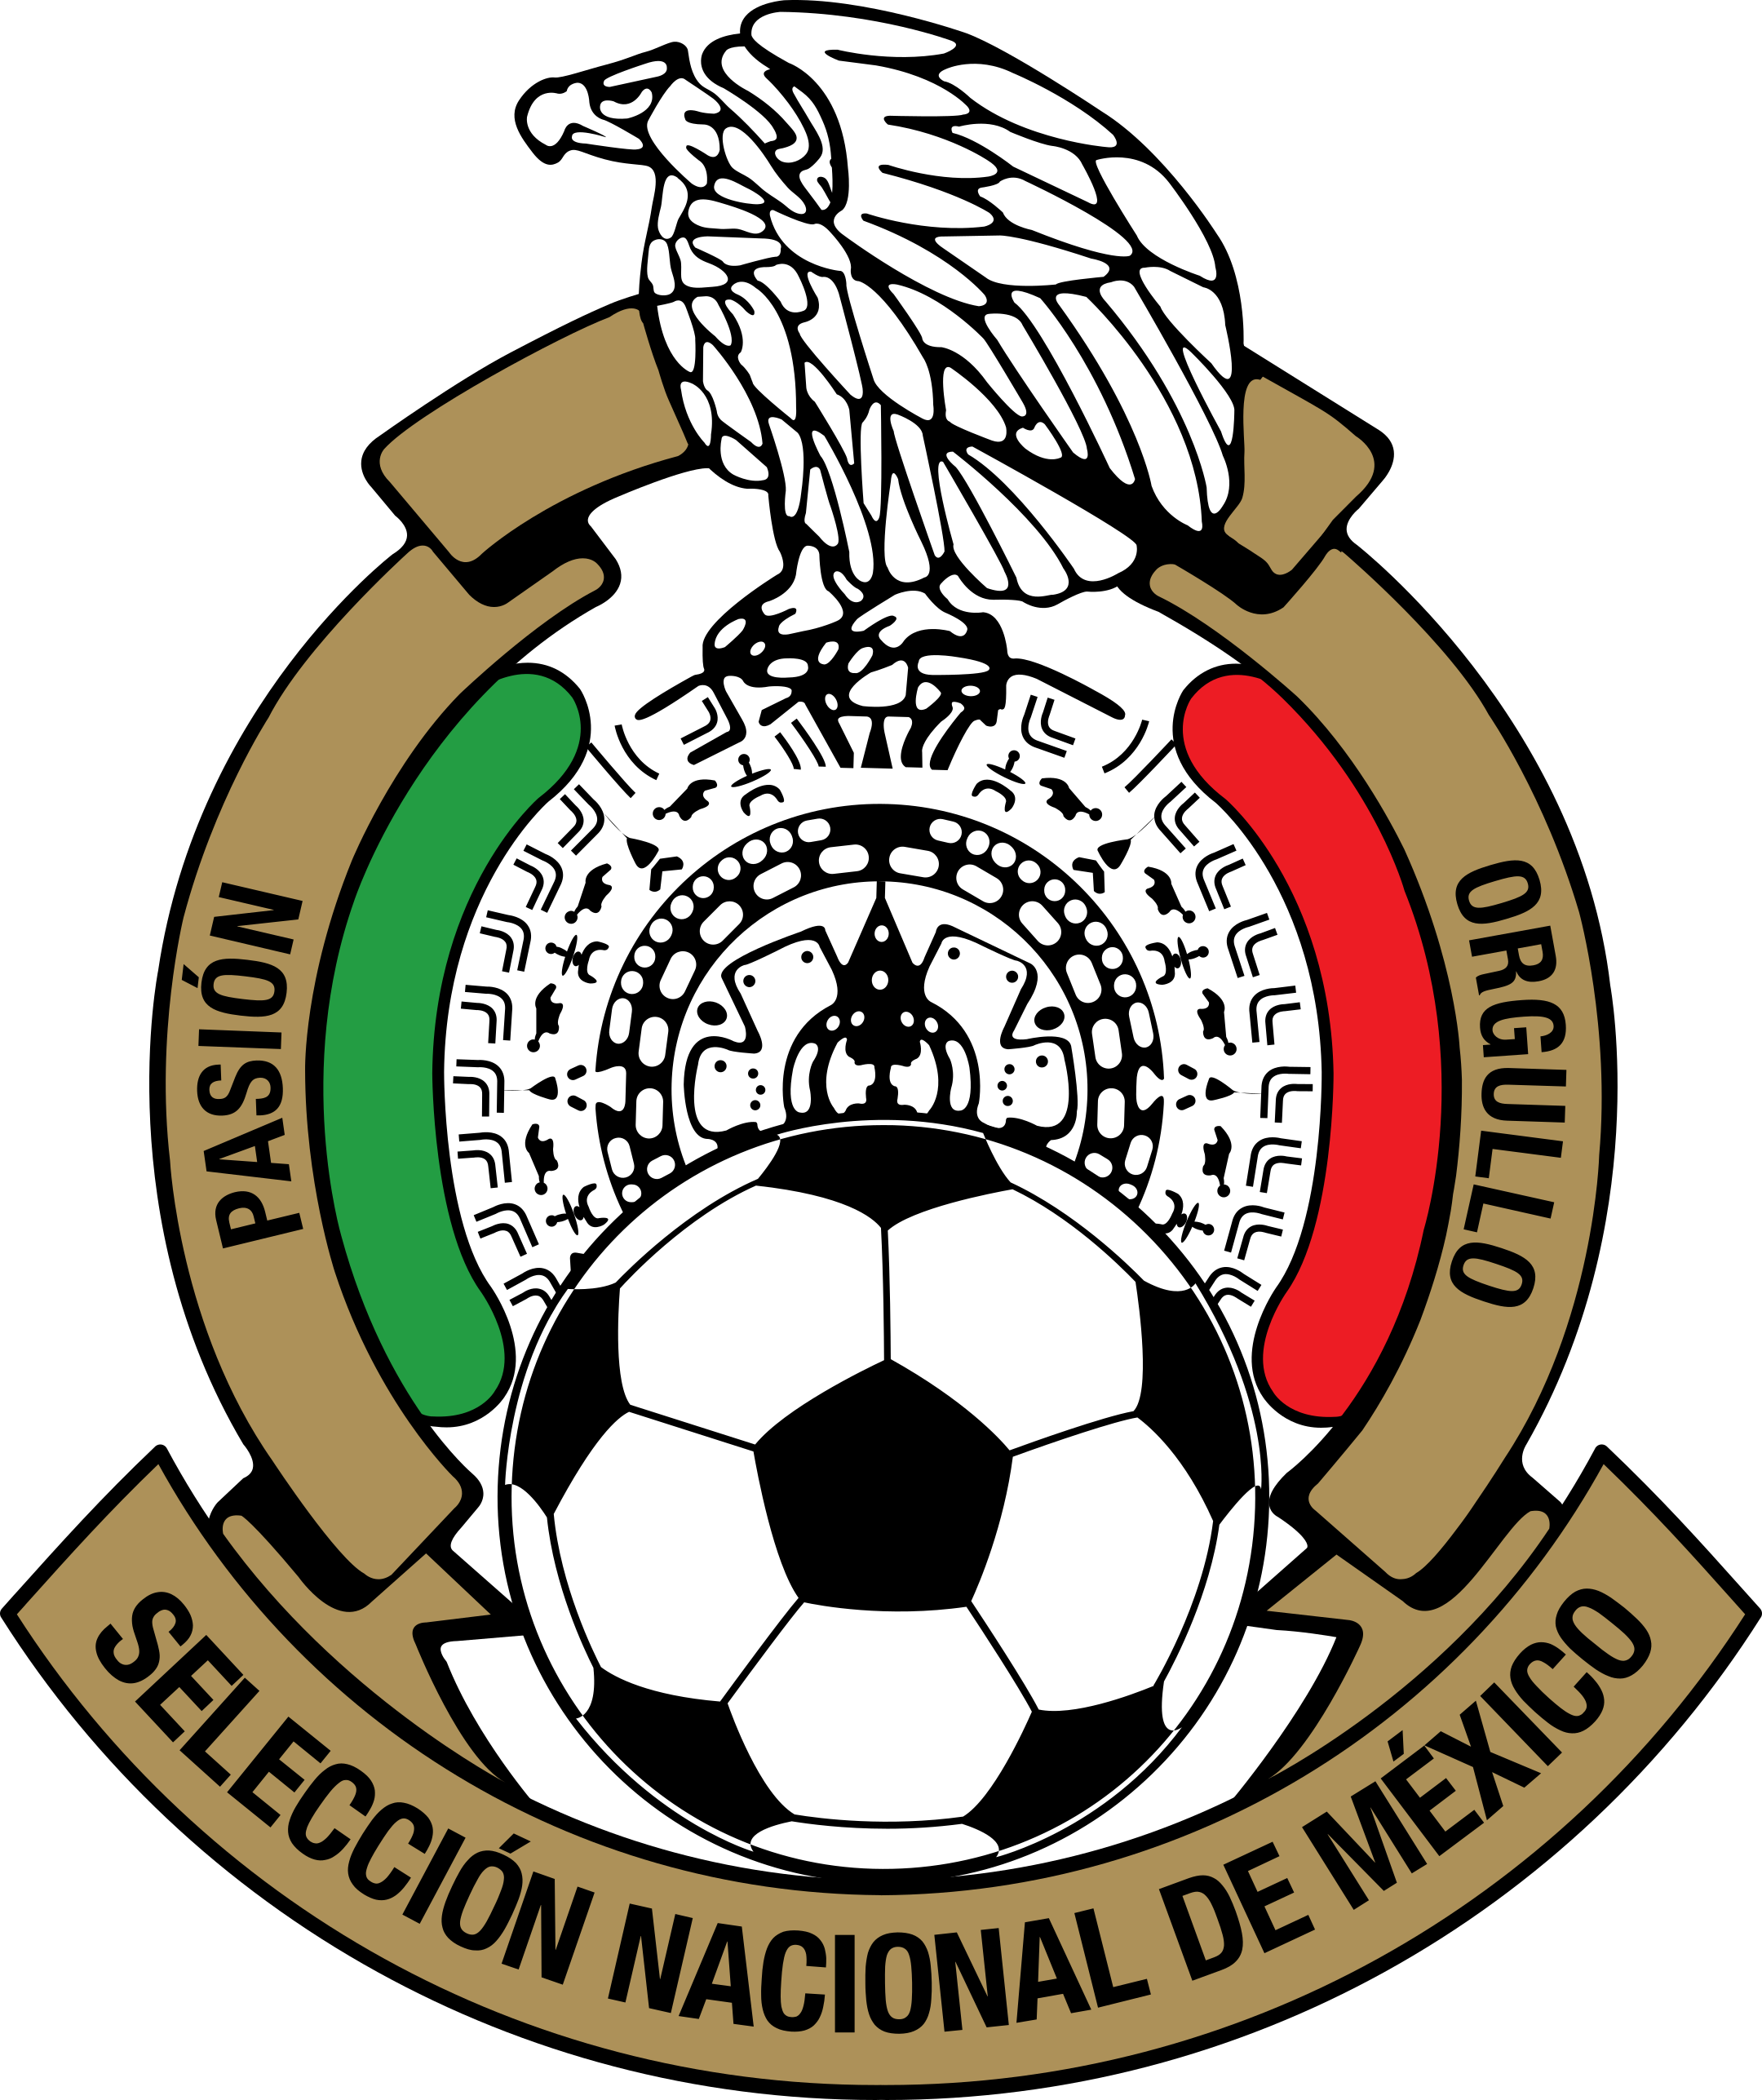 fmf seleccion de mexico logo 1 - FMF - Seleção do México do Logo